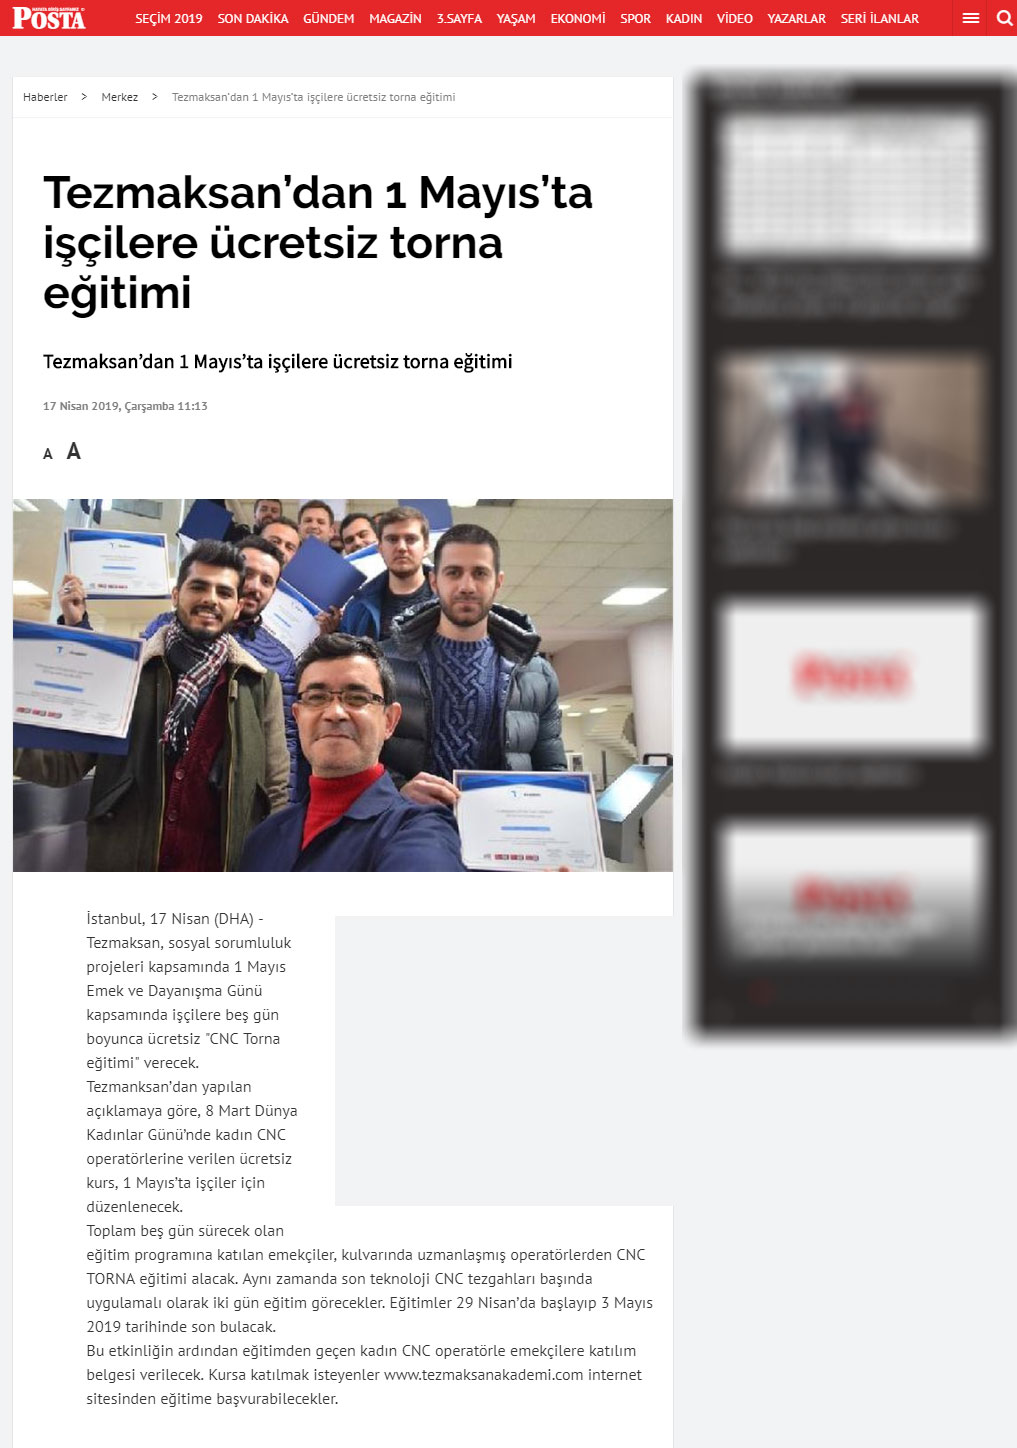 Tezmaksan’dan 1 Mayıs’ta İşçilere Ücretsiz Torna Eğitimi - Posta Gazetesi